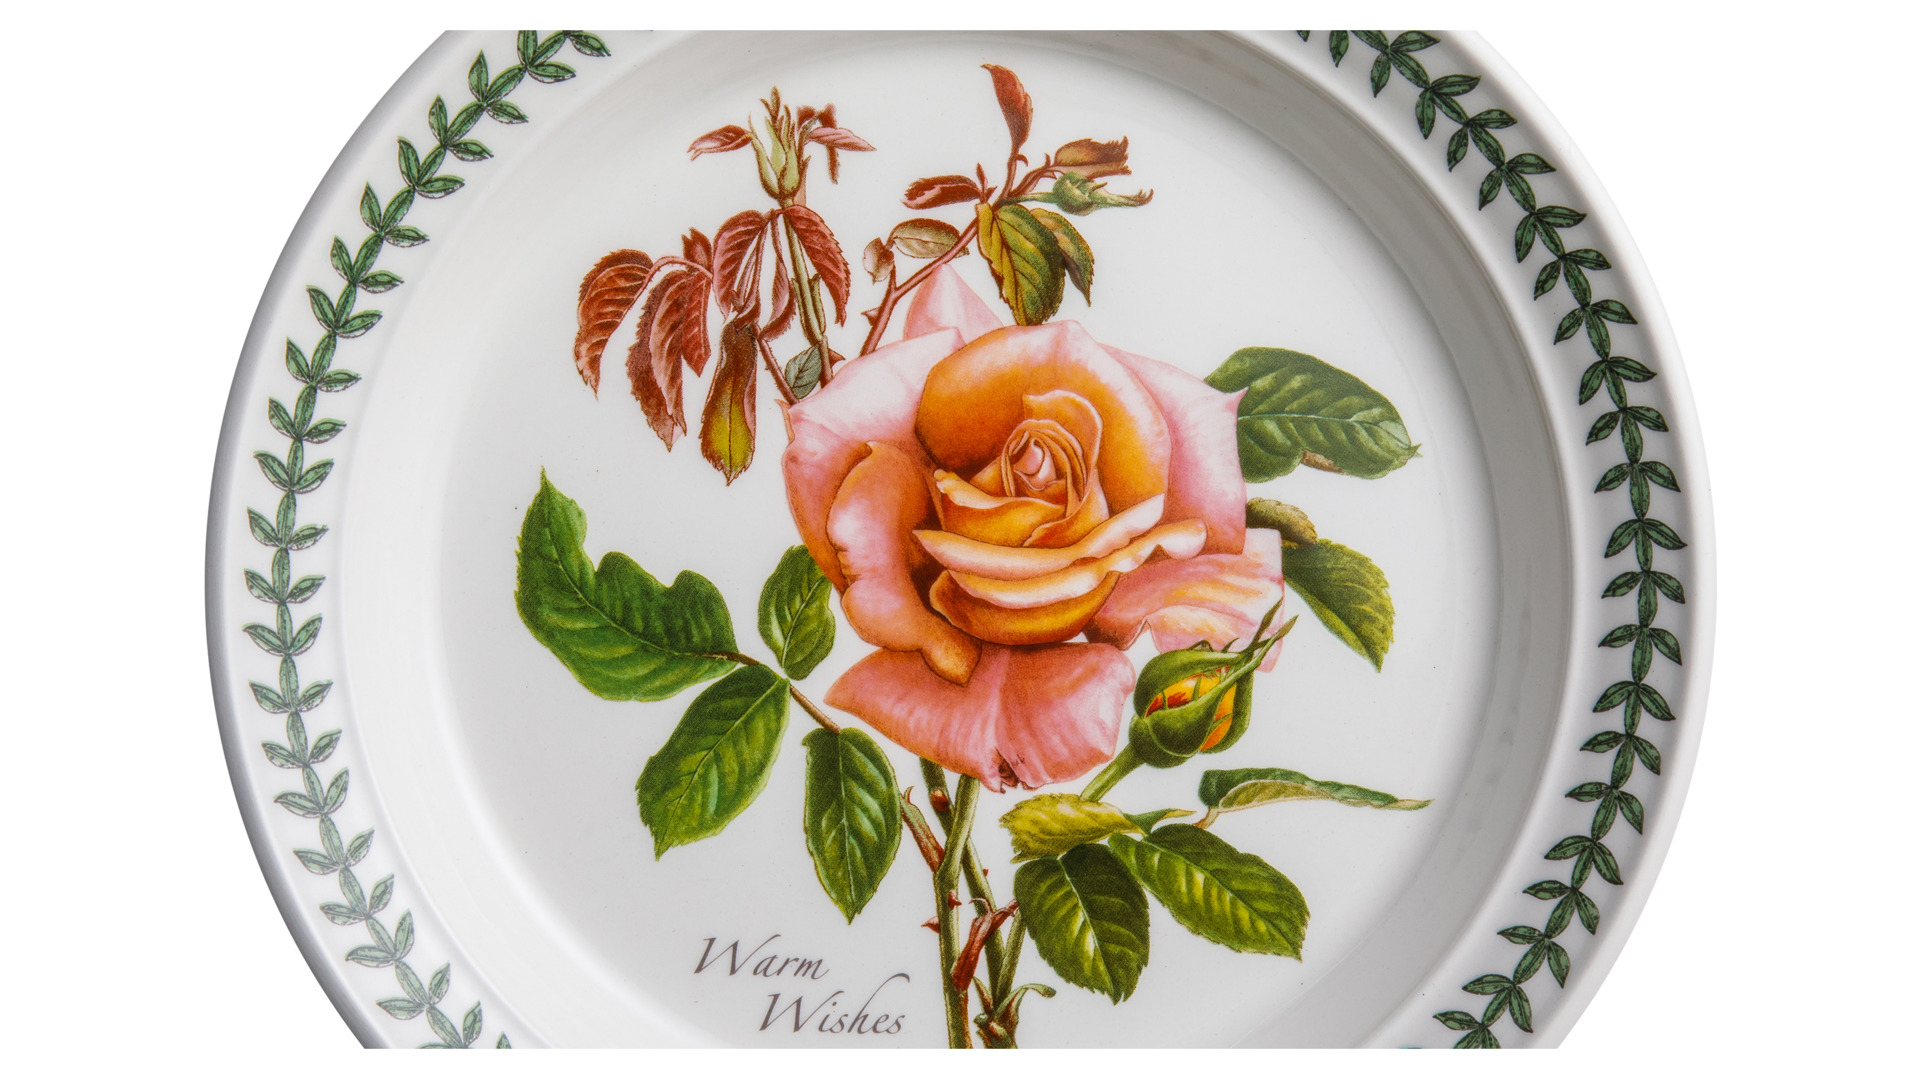 Тарелка пирожковая Portmeirion Ботанический сад Розы Наилучшие пожелания чайная роза 15 см